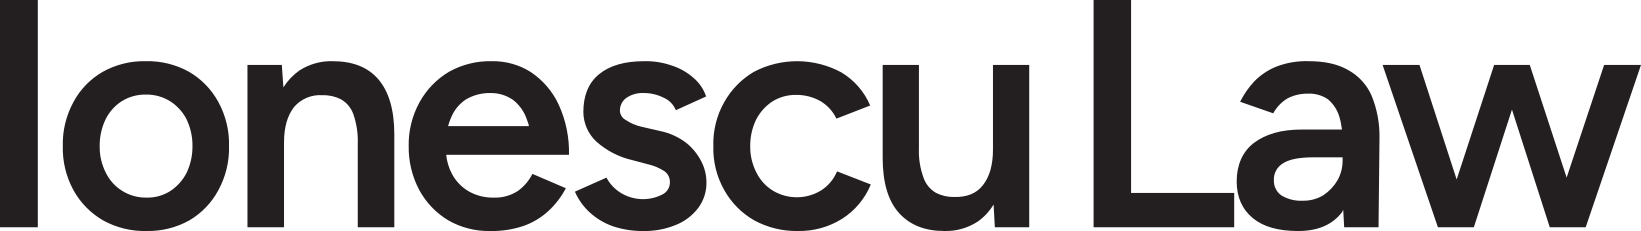 Textul IonescuLaw scris cu font negru reprezentand logo-ul site-ului ionesculaw.ro, avocati penalisti din Bucuresti